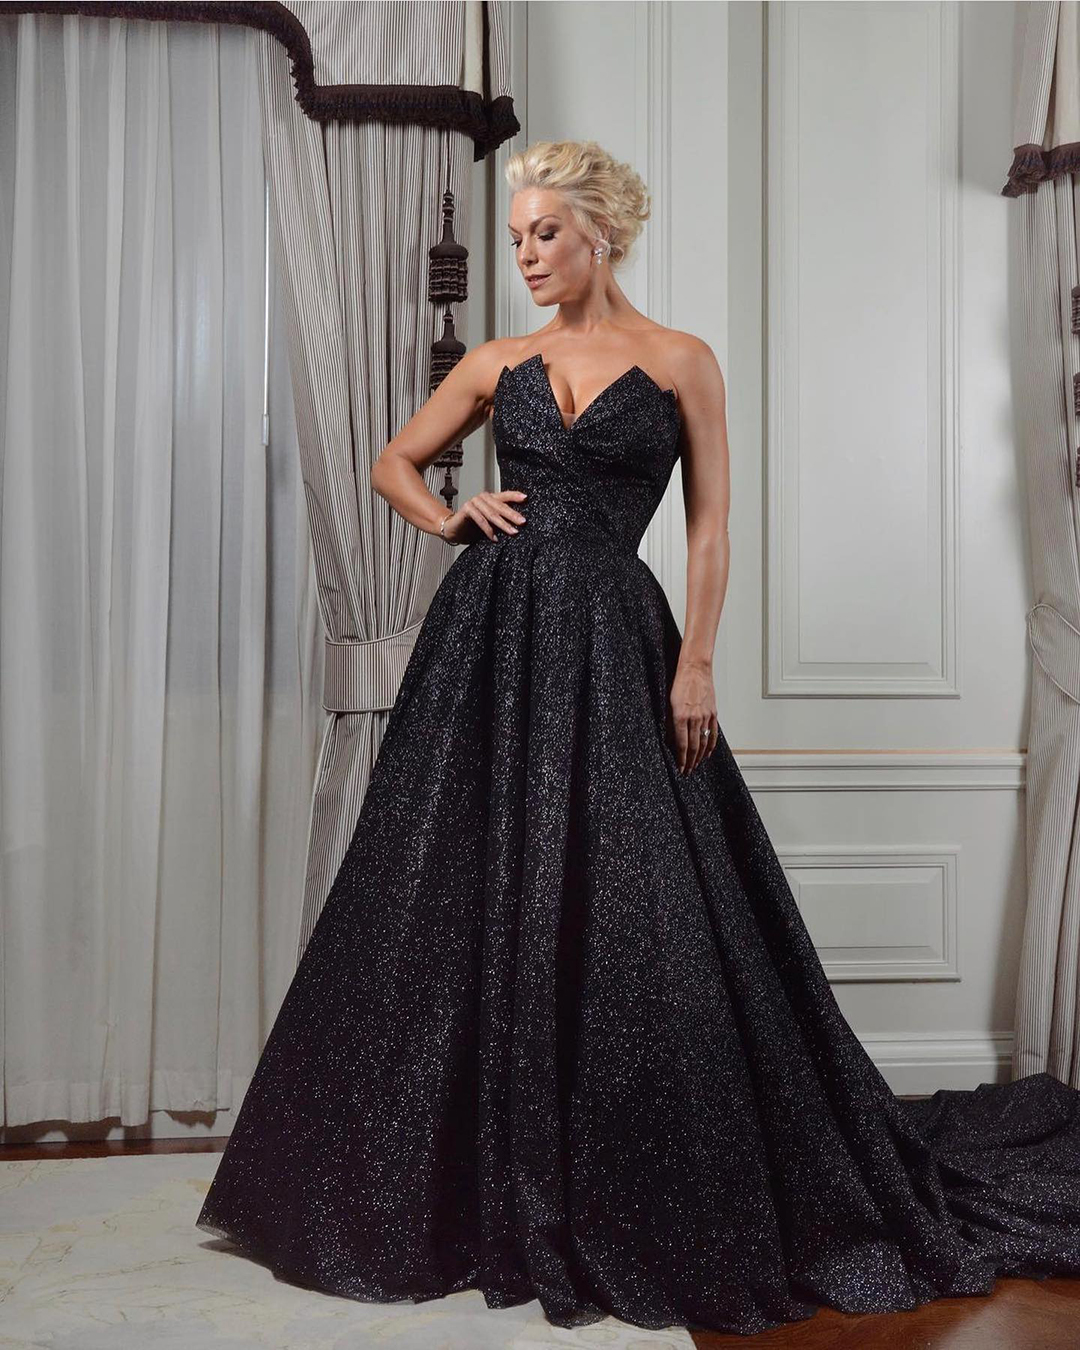 black wedding dresses a line strapless neckline sequins elegant suzanneneville